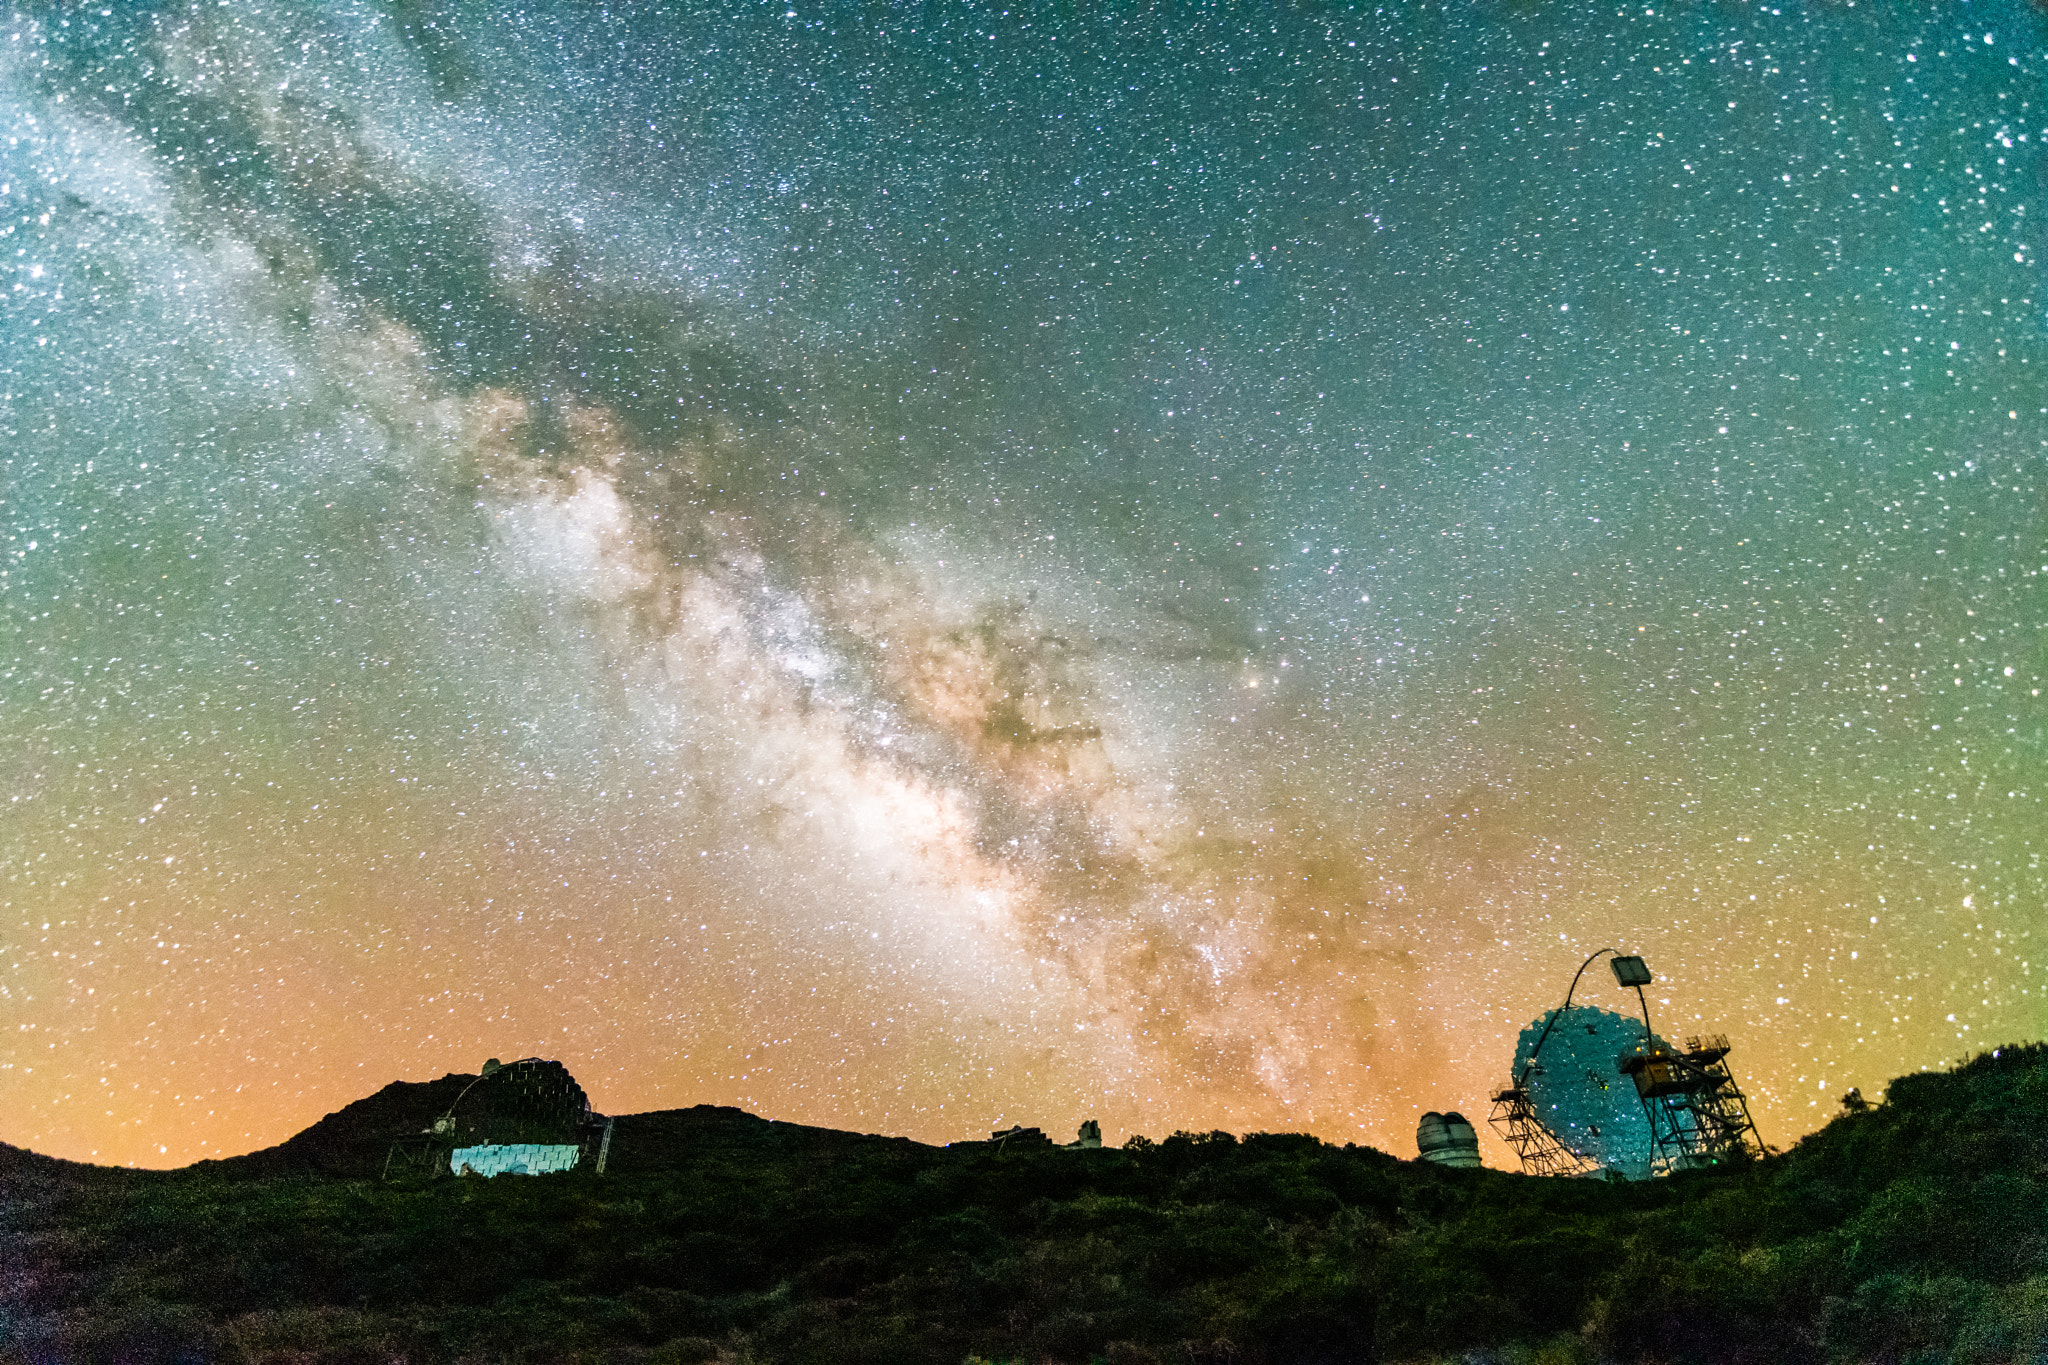 Milky Way core over Magic telescope La Palma